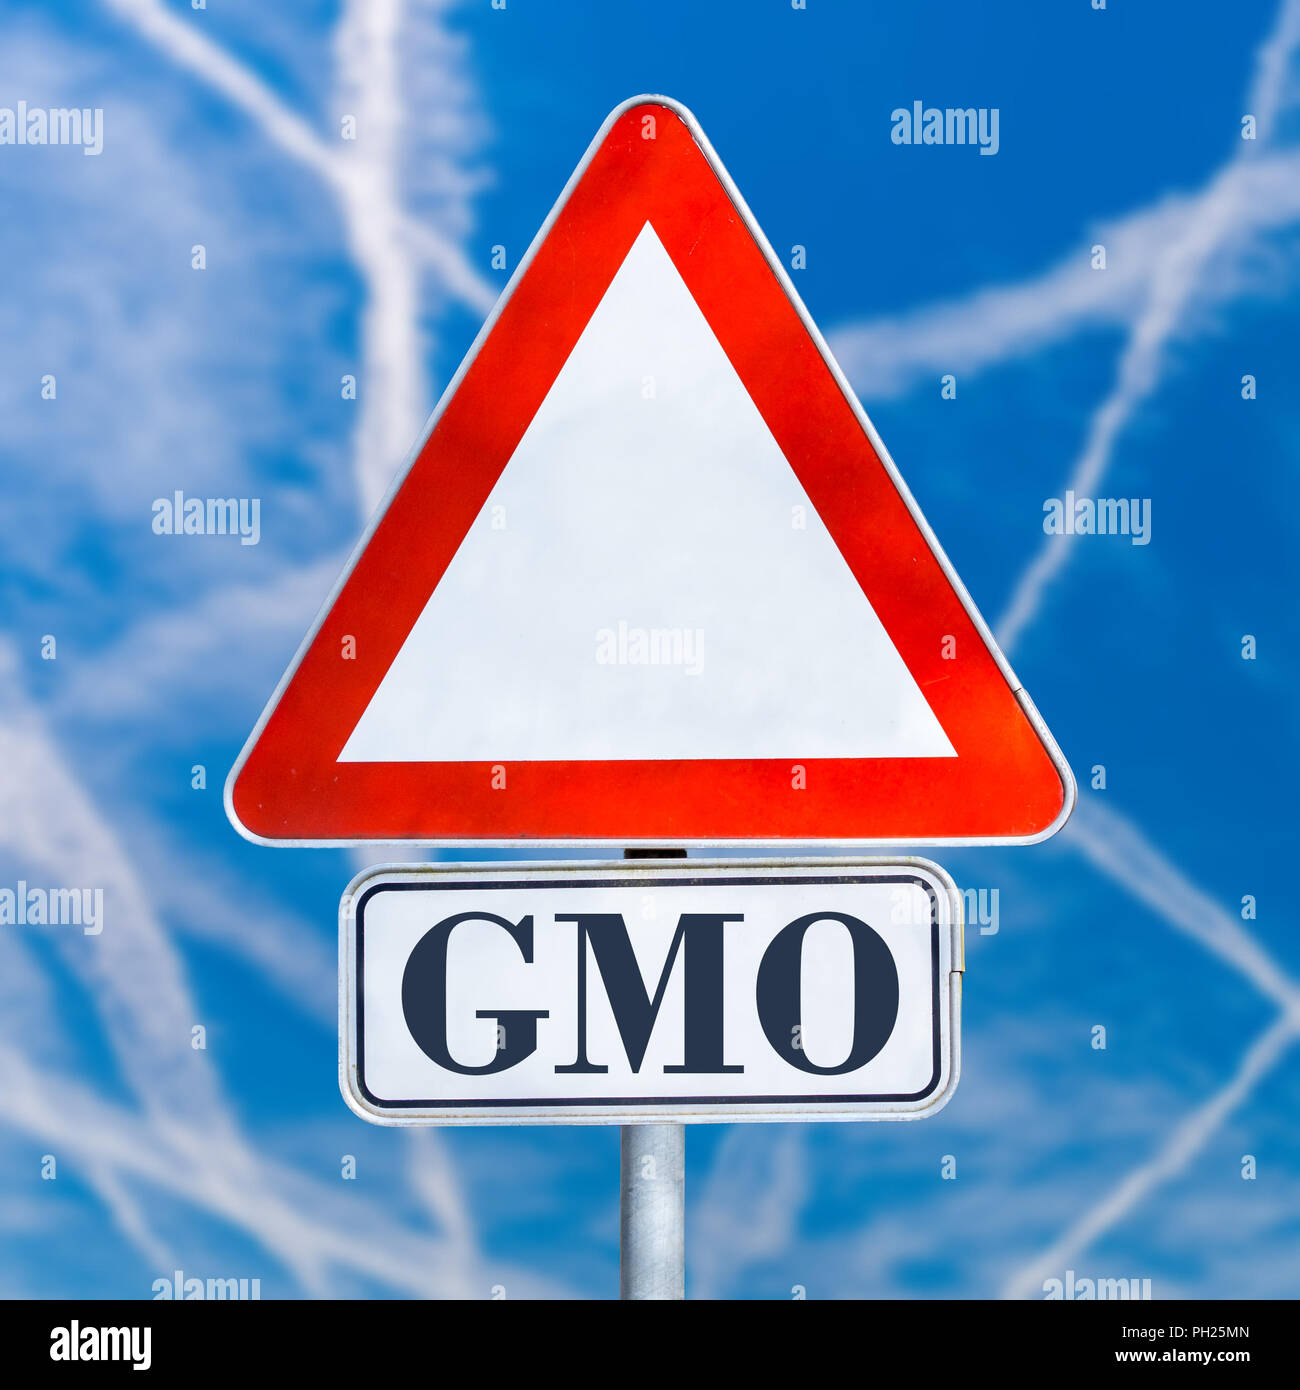 Gvo oder genetisch veränderten Organismus, weiß Dreieckverkehr Warnschild auf einen blauen Himmel mit Jet Kondensstreifen, konzeptionelle Bild. Stockfoto